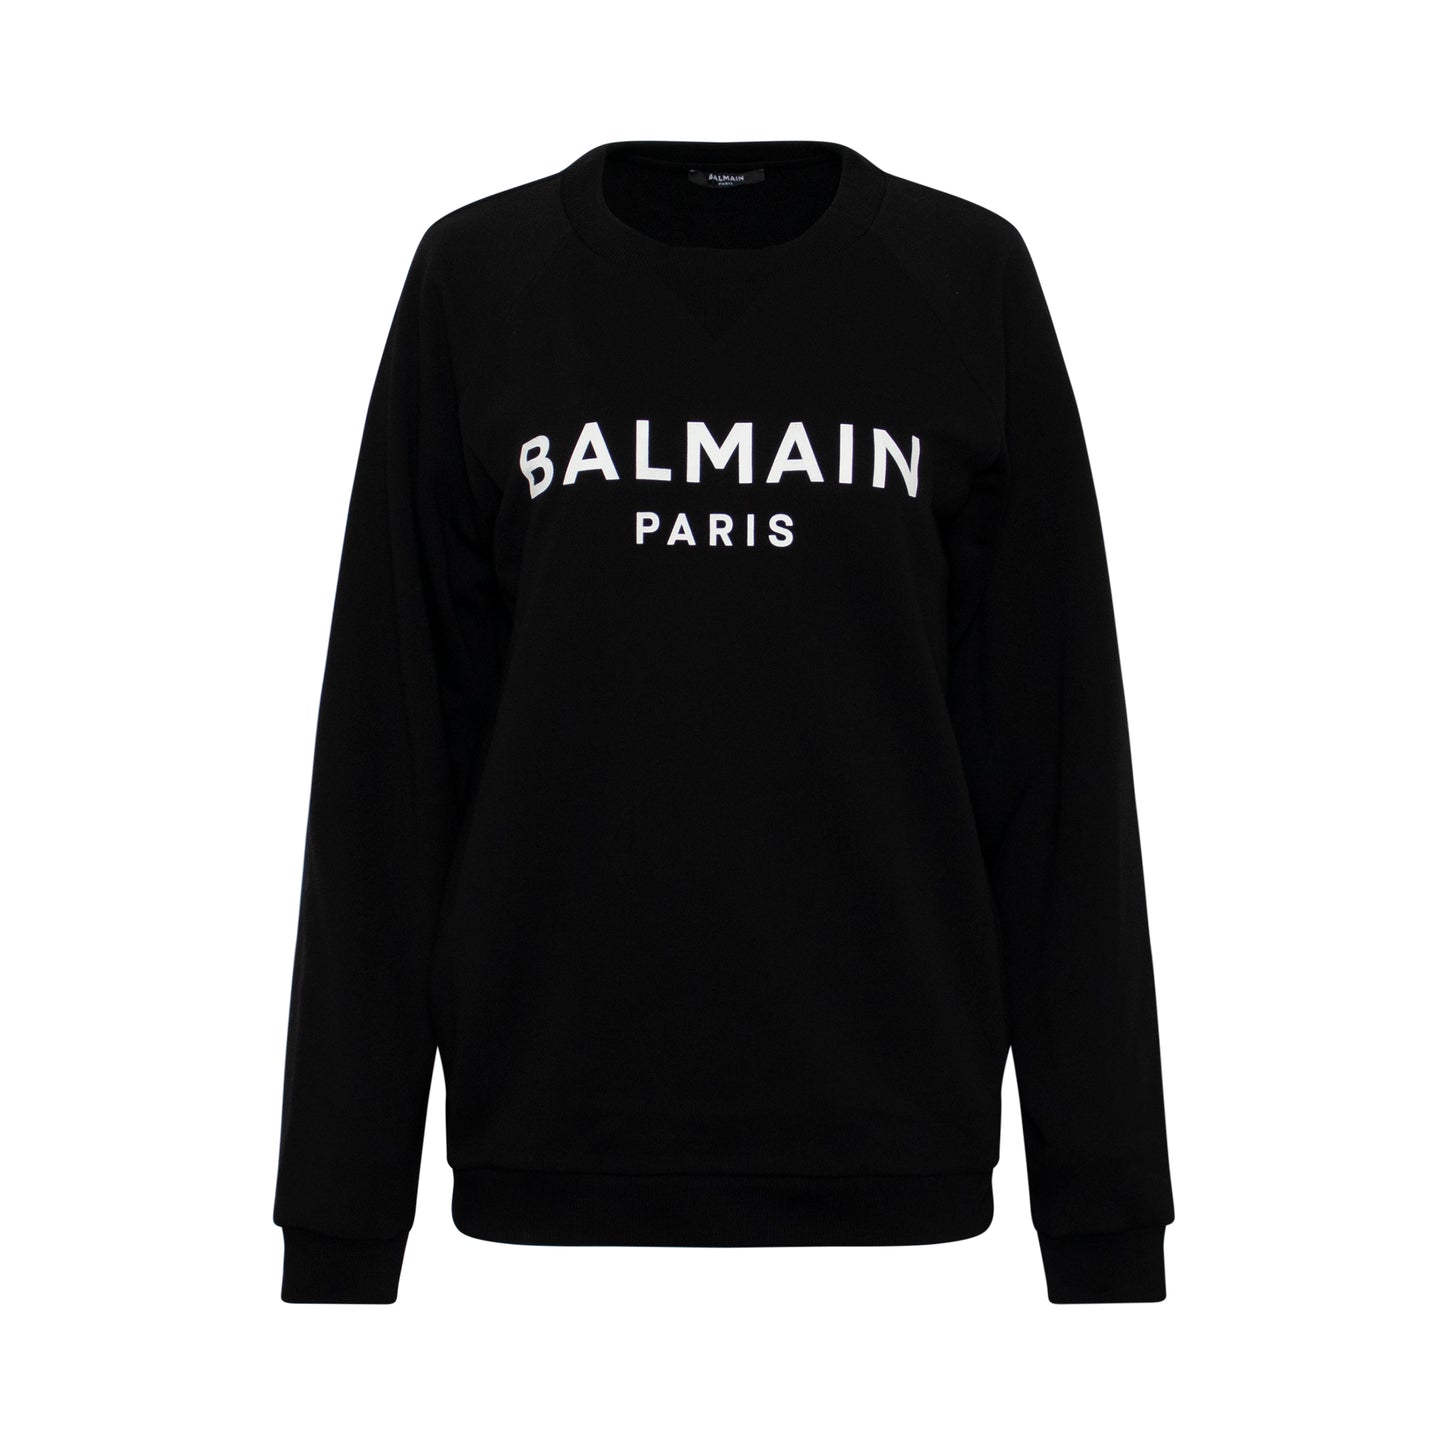 Balmain Printed Logo Sweatshirt in Black/White